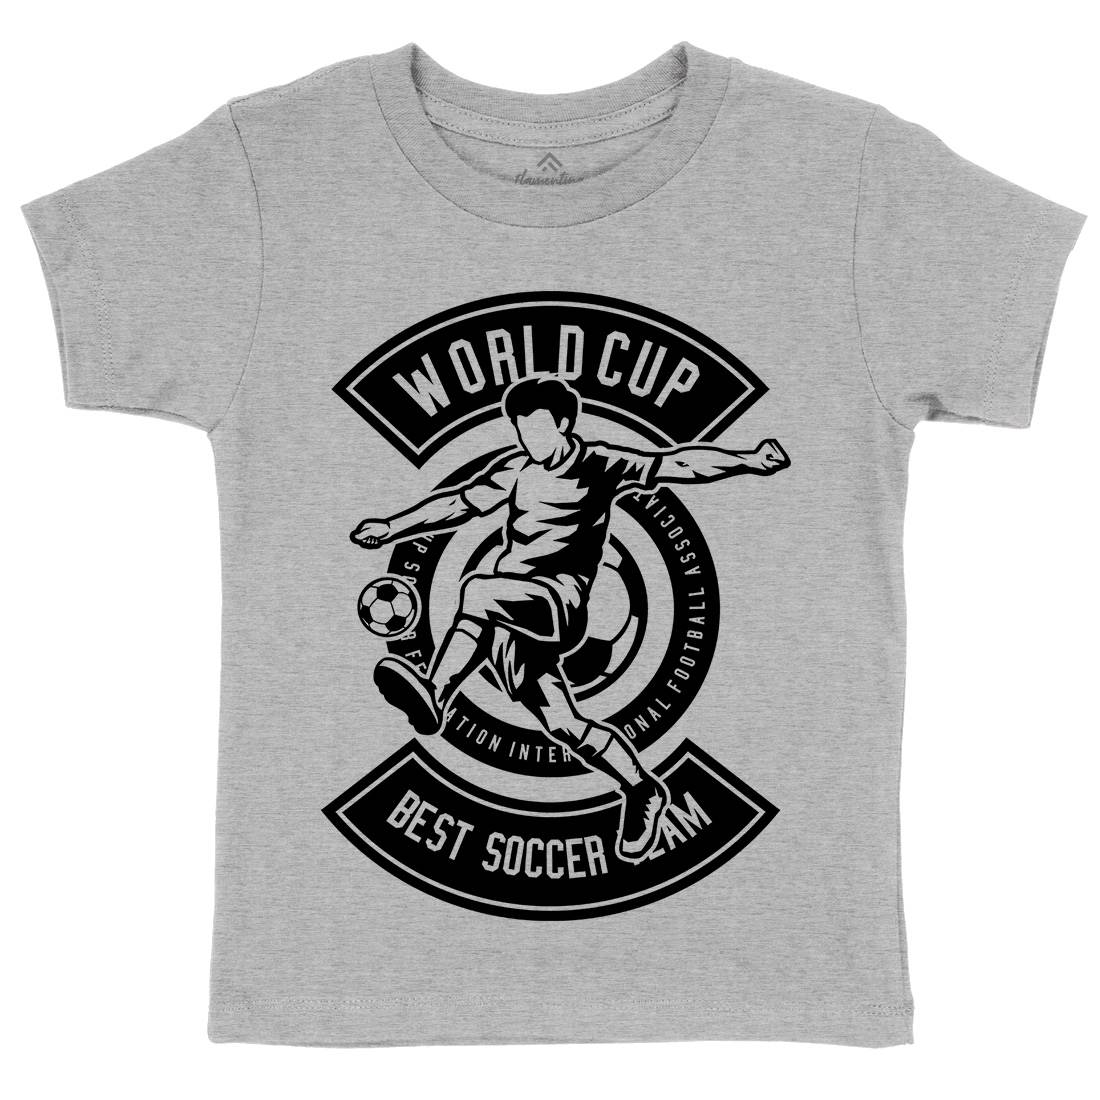 World Cup Soccer Kids Crew Neck T-Shirt Sport B675